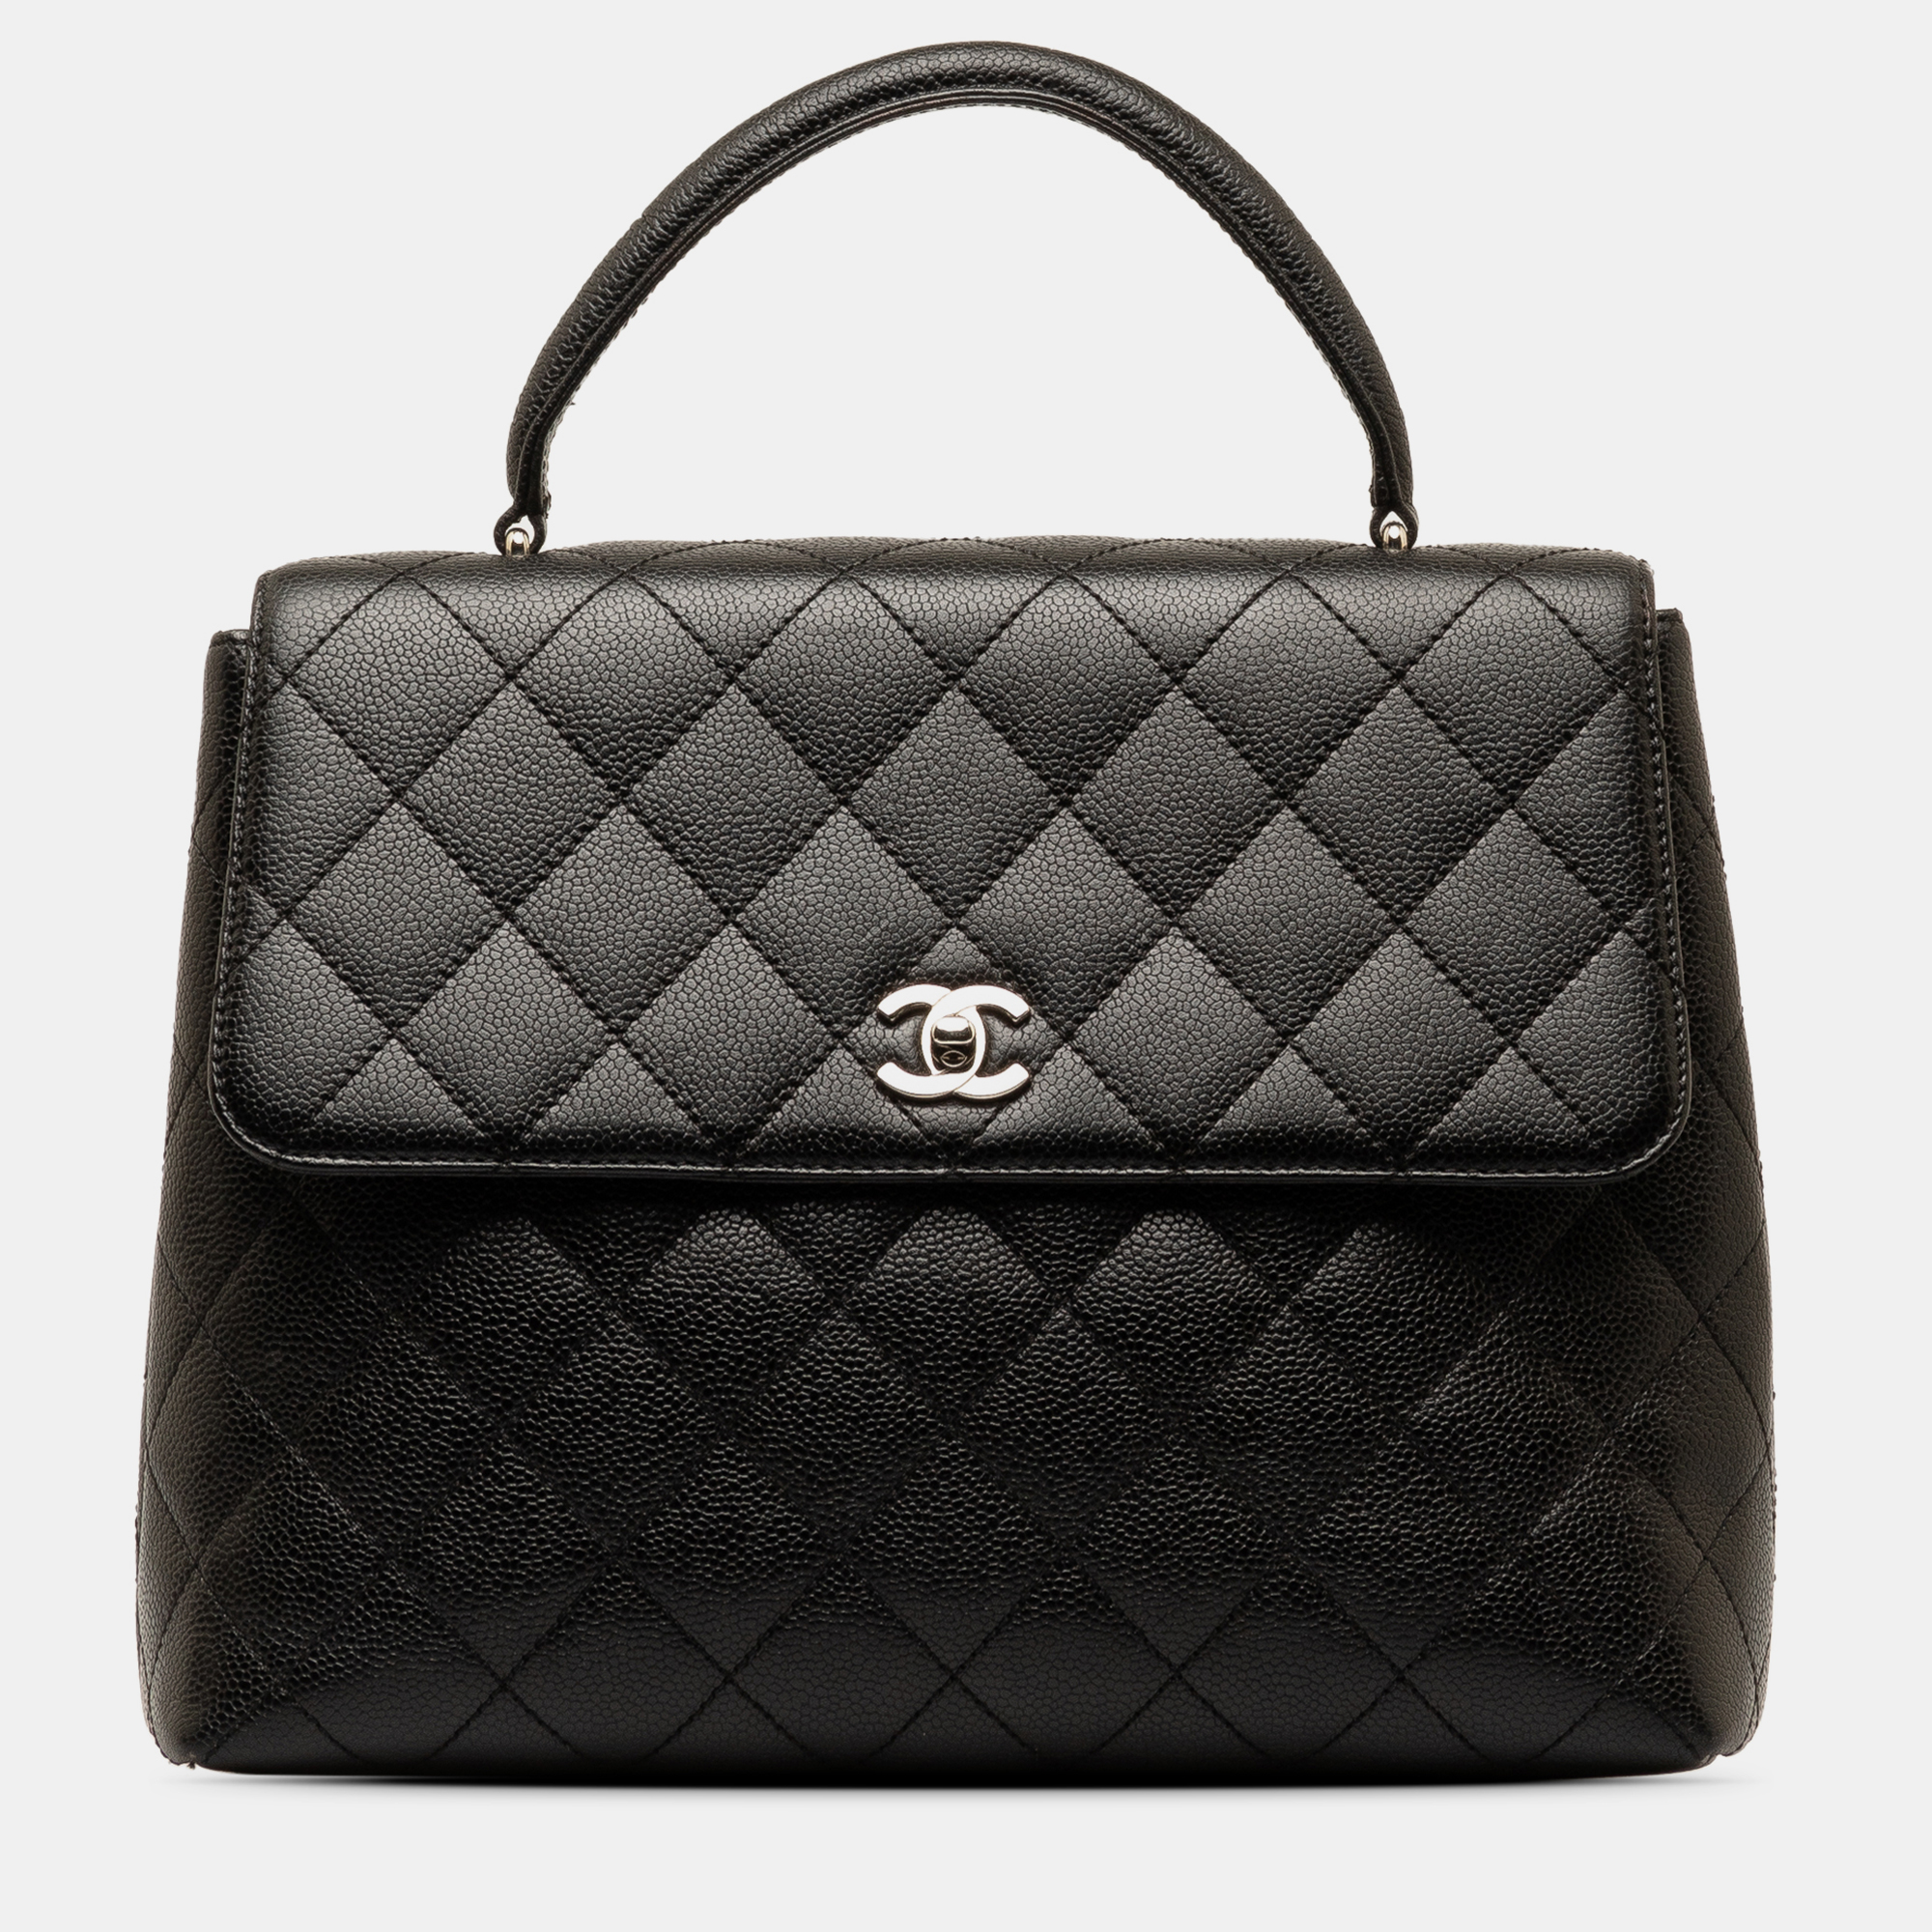 Chanel caviar kelly top handle bag